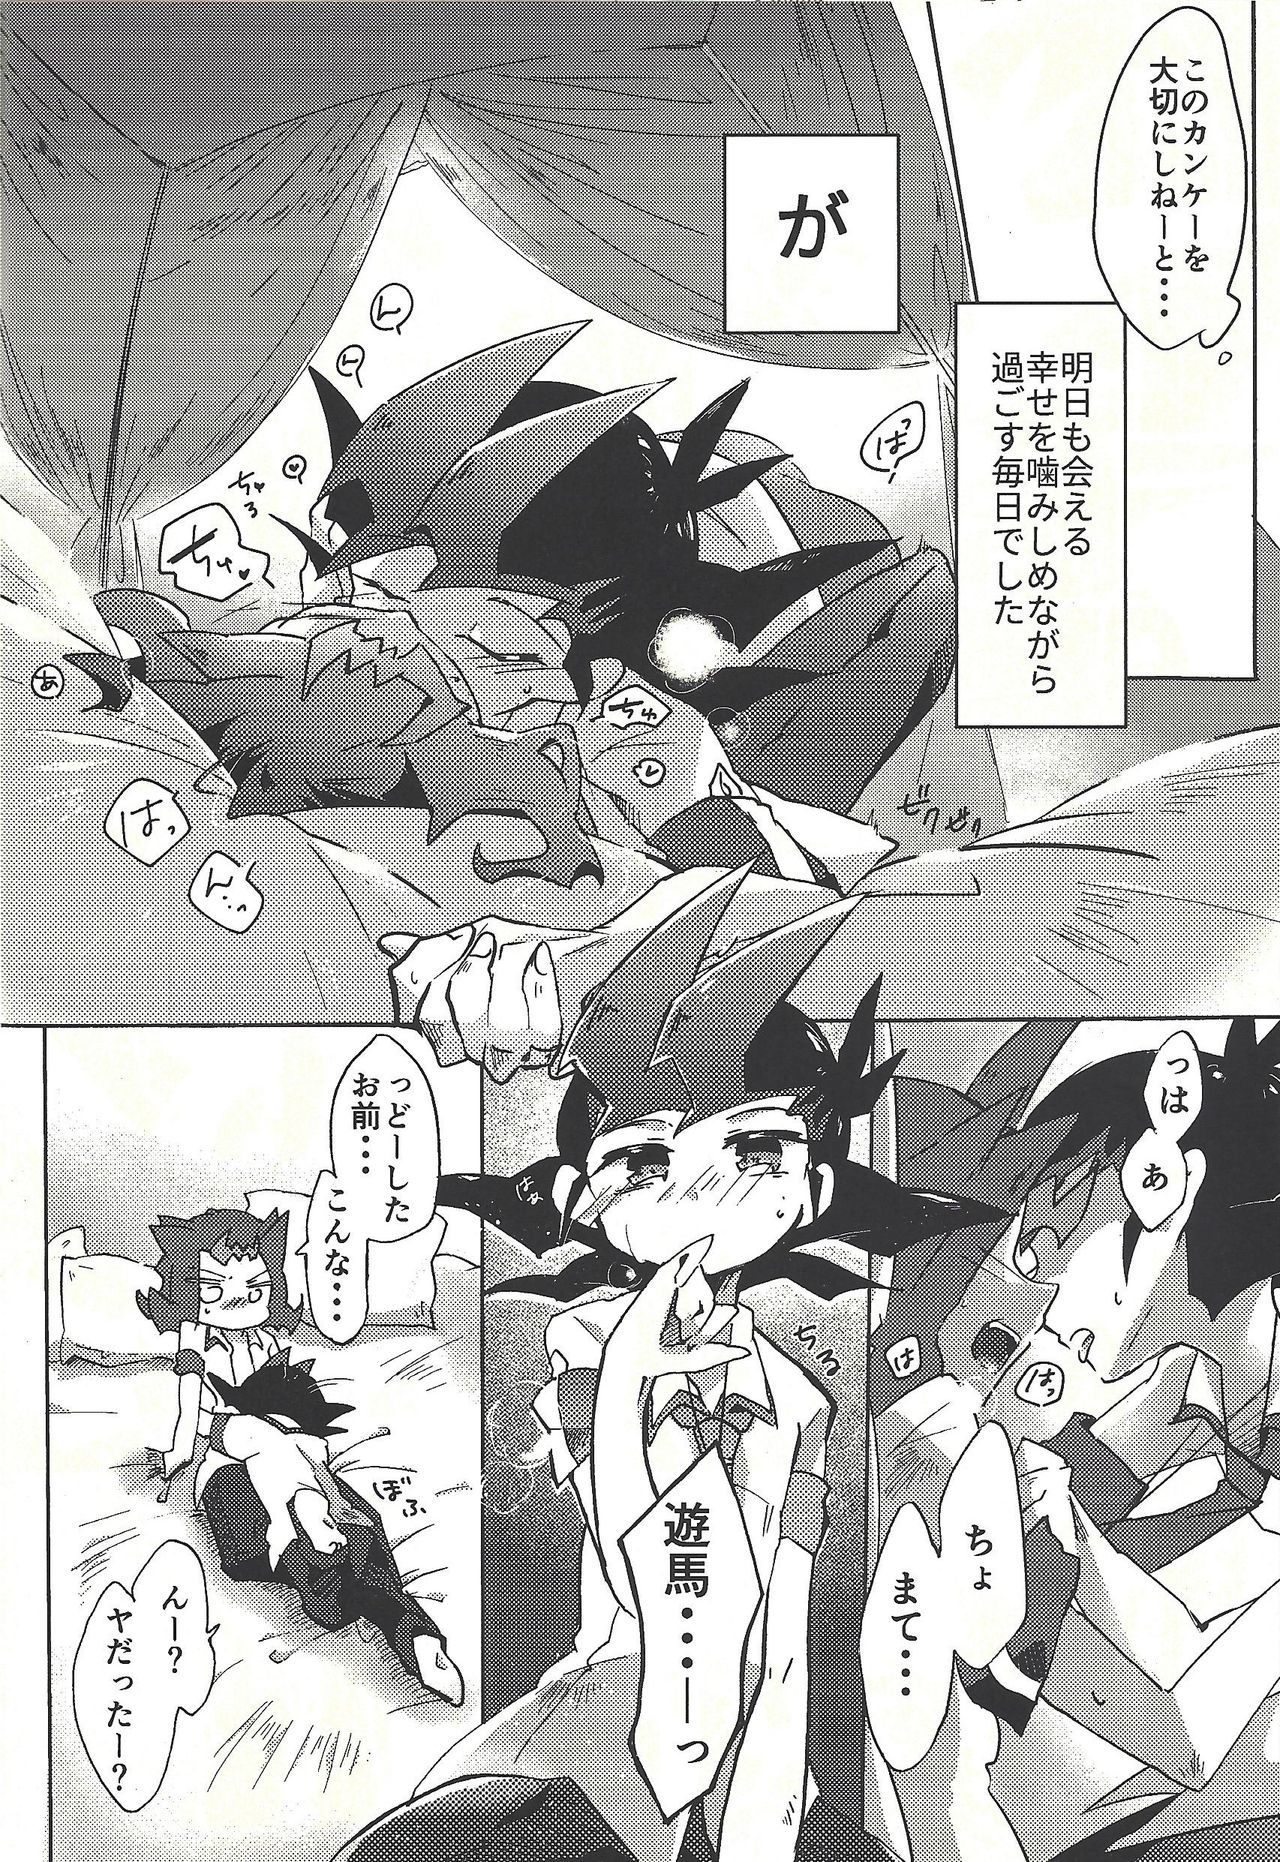 (Ore no Turn vs. 2019) [Wakaru mushi (623)] ☓ Yume resu fumin rēsu (Yu-Gi-Oh! ZEXAL) page 7 full